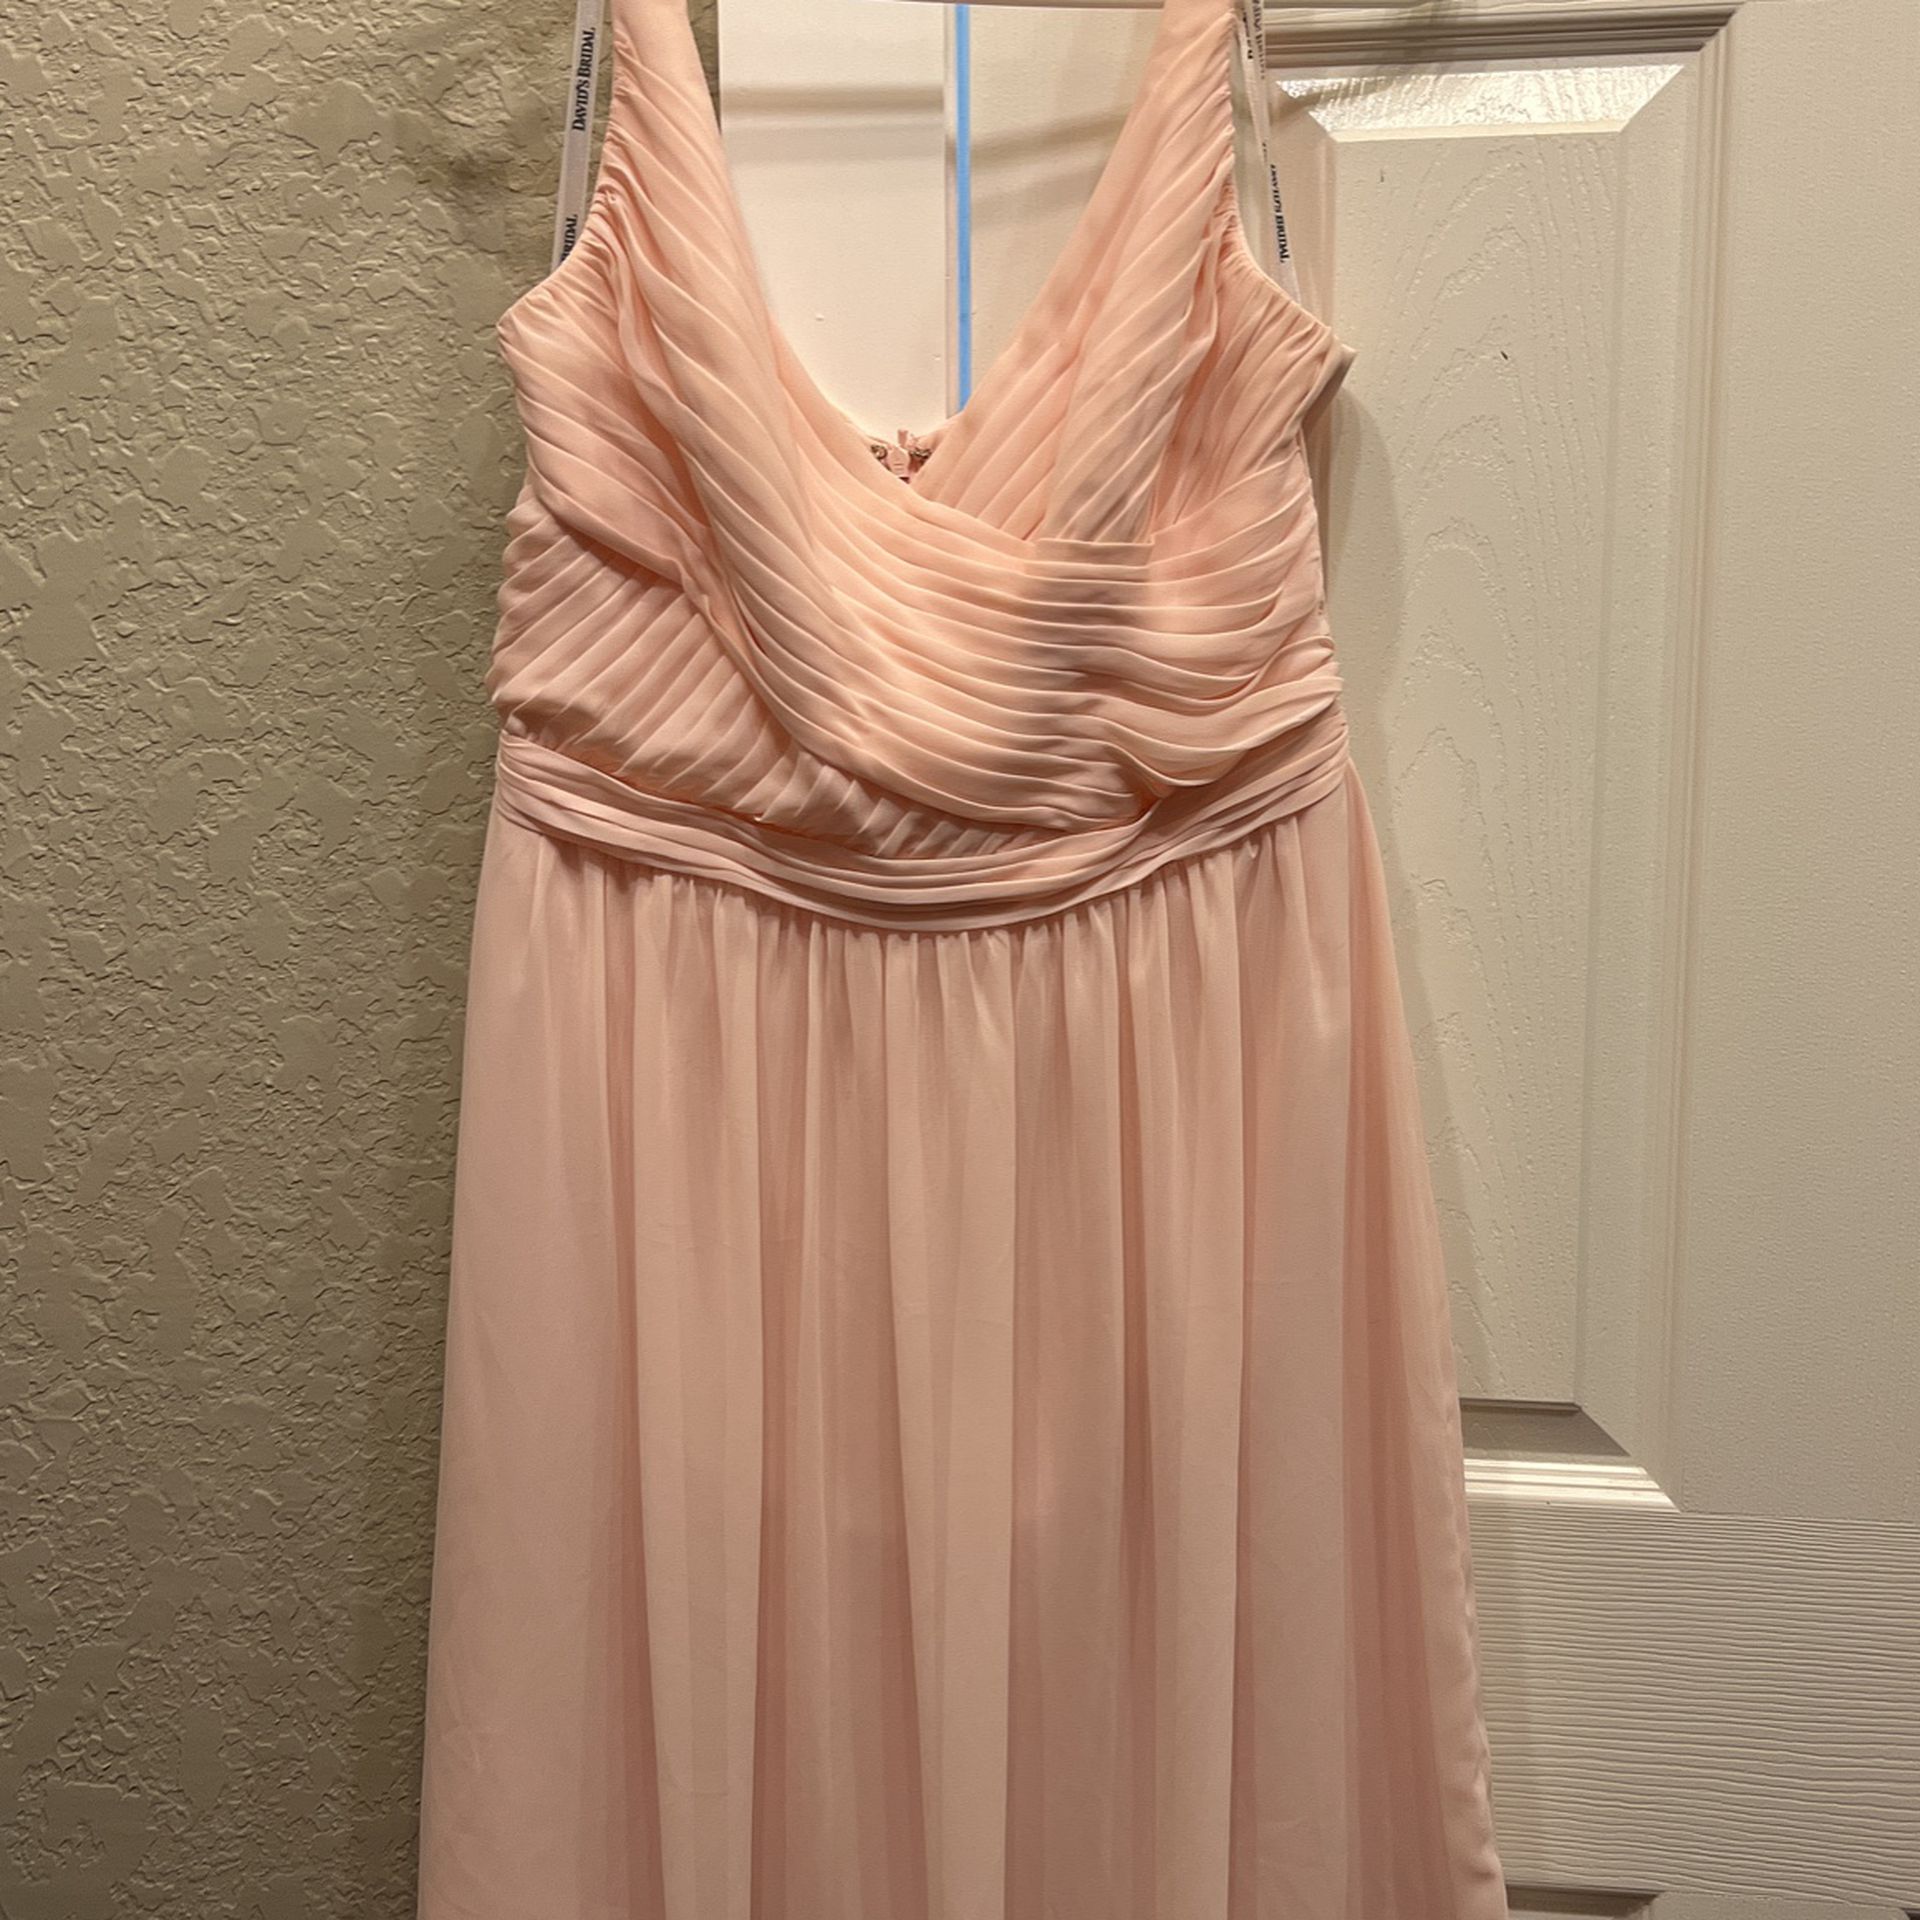 Formal Blush Pink Dress